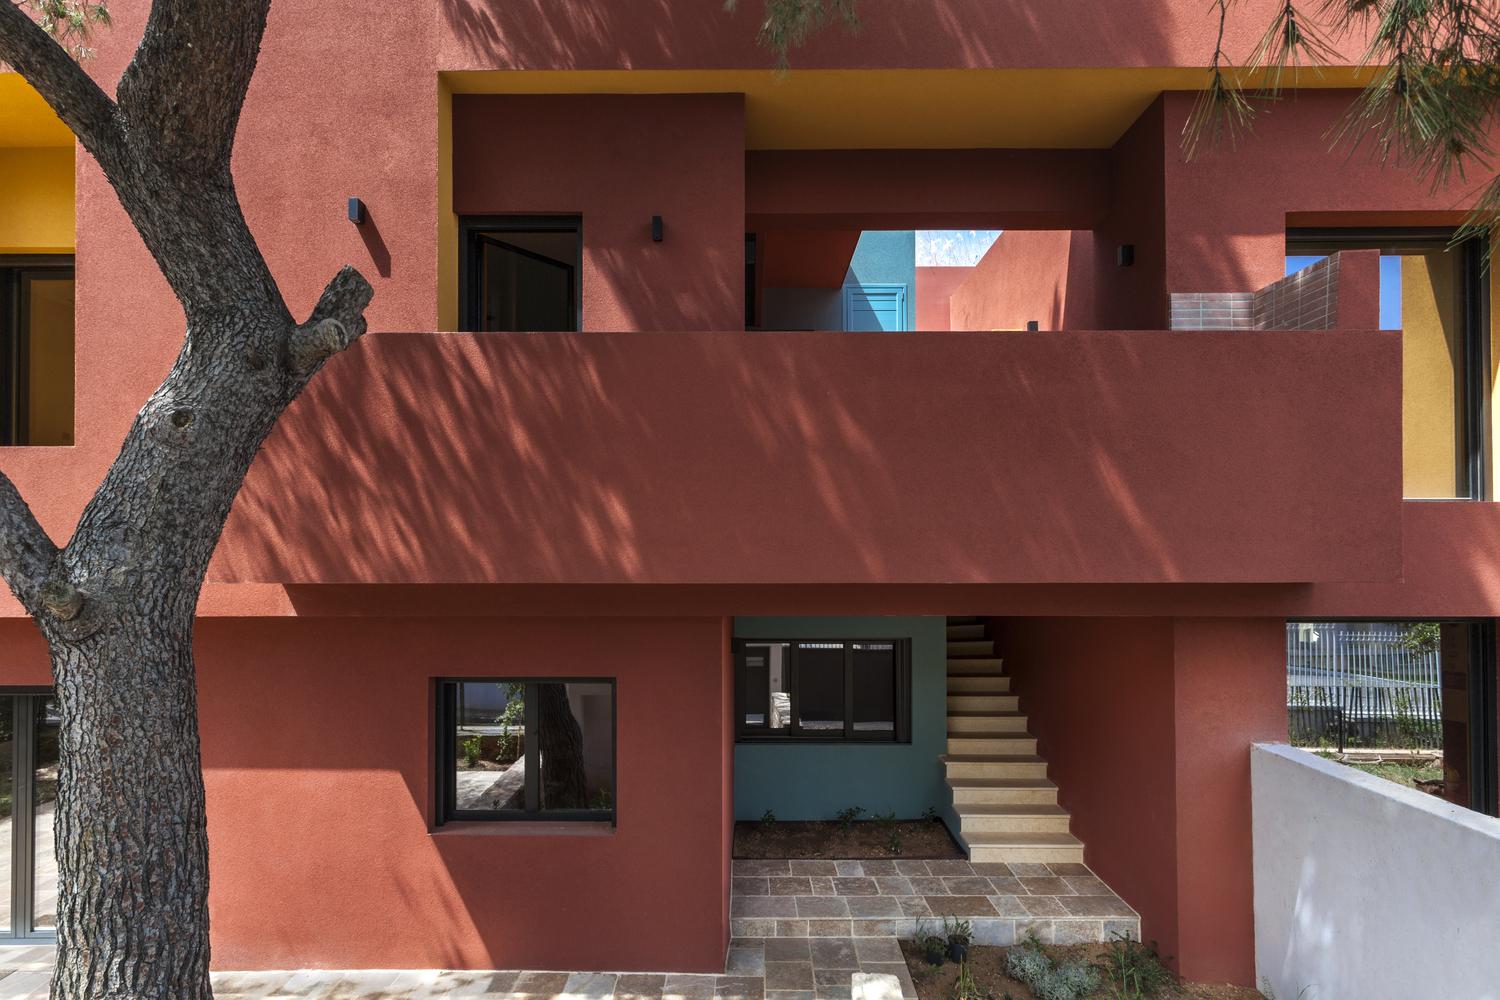 【希臘50年代住宅「大翻身」】塗上樸實而鮮明的色彩 為寧靜小區賦予全新活力